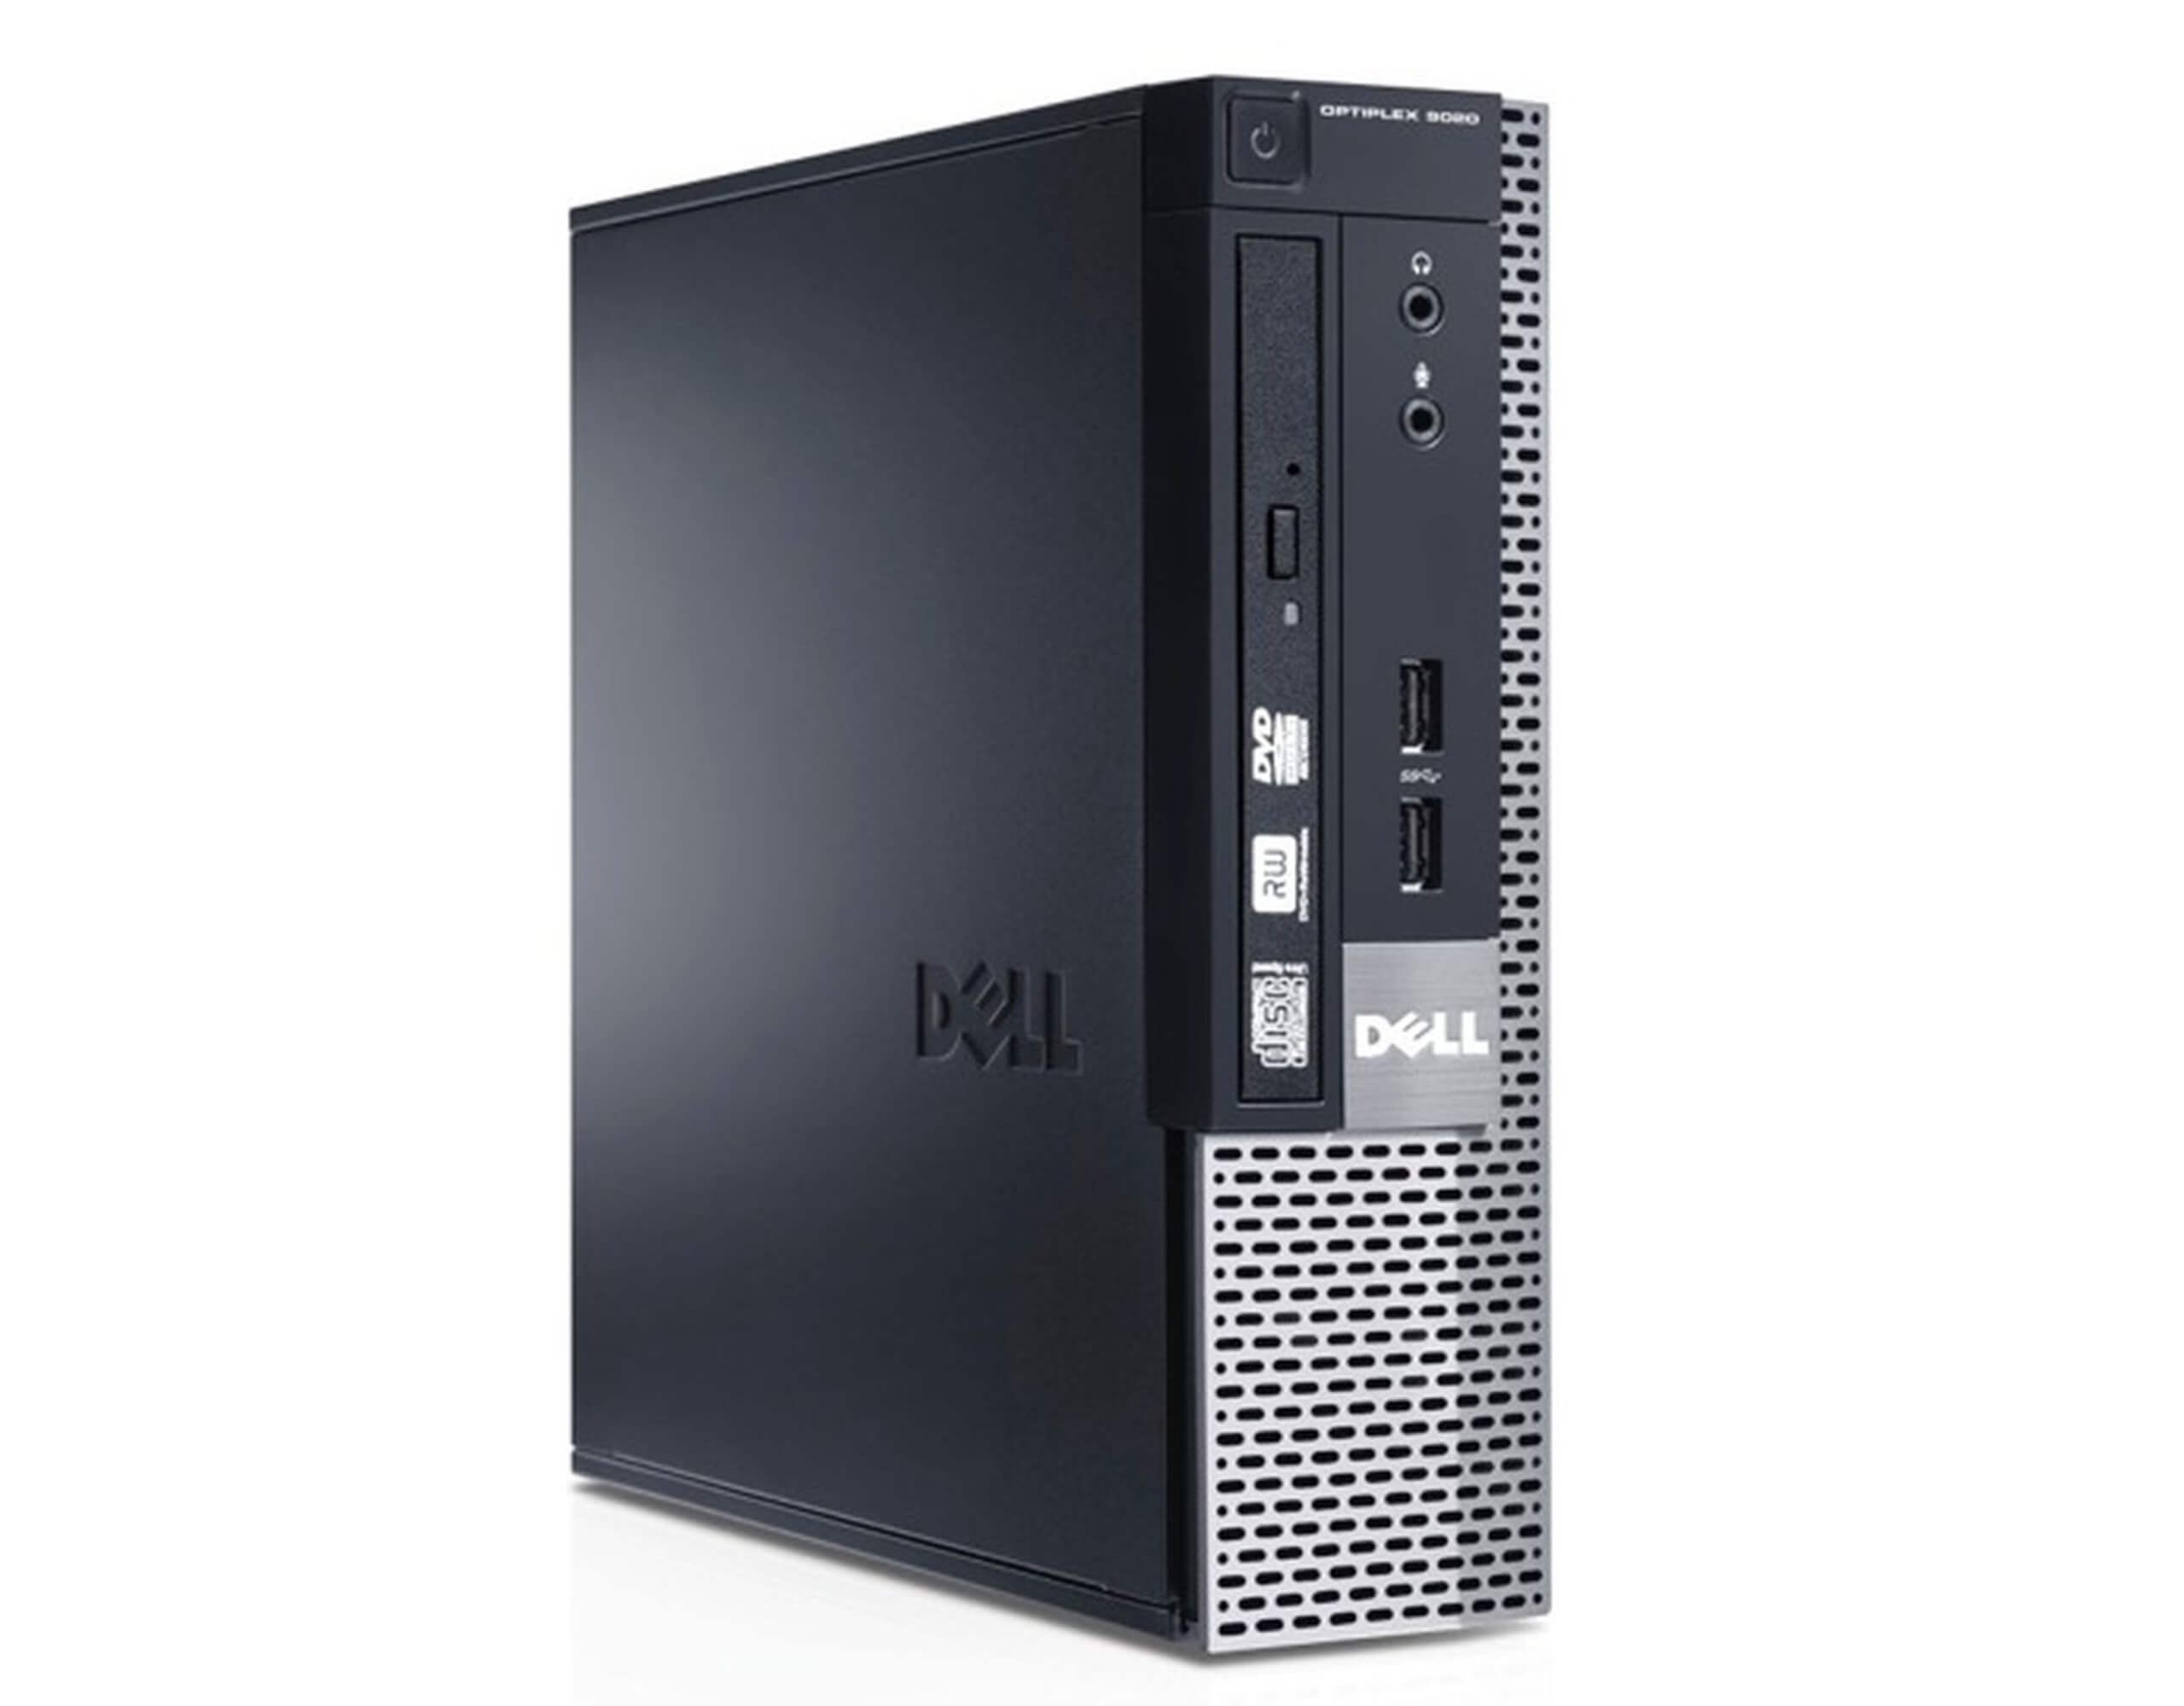 DELL 9020 USFF I7-4790S 3.2 / 8192 MB DDR3 / 256 GB SSD / DVD / WINDOWS 10 PRO